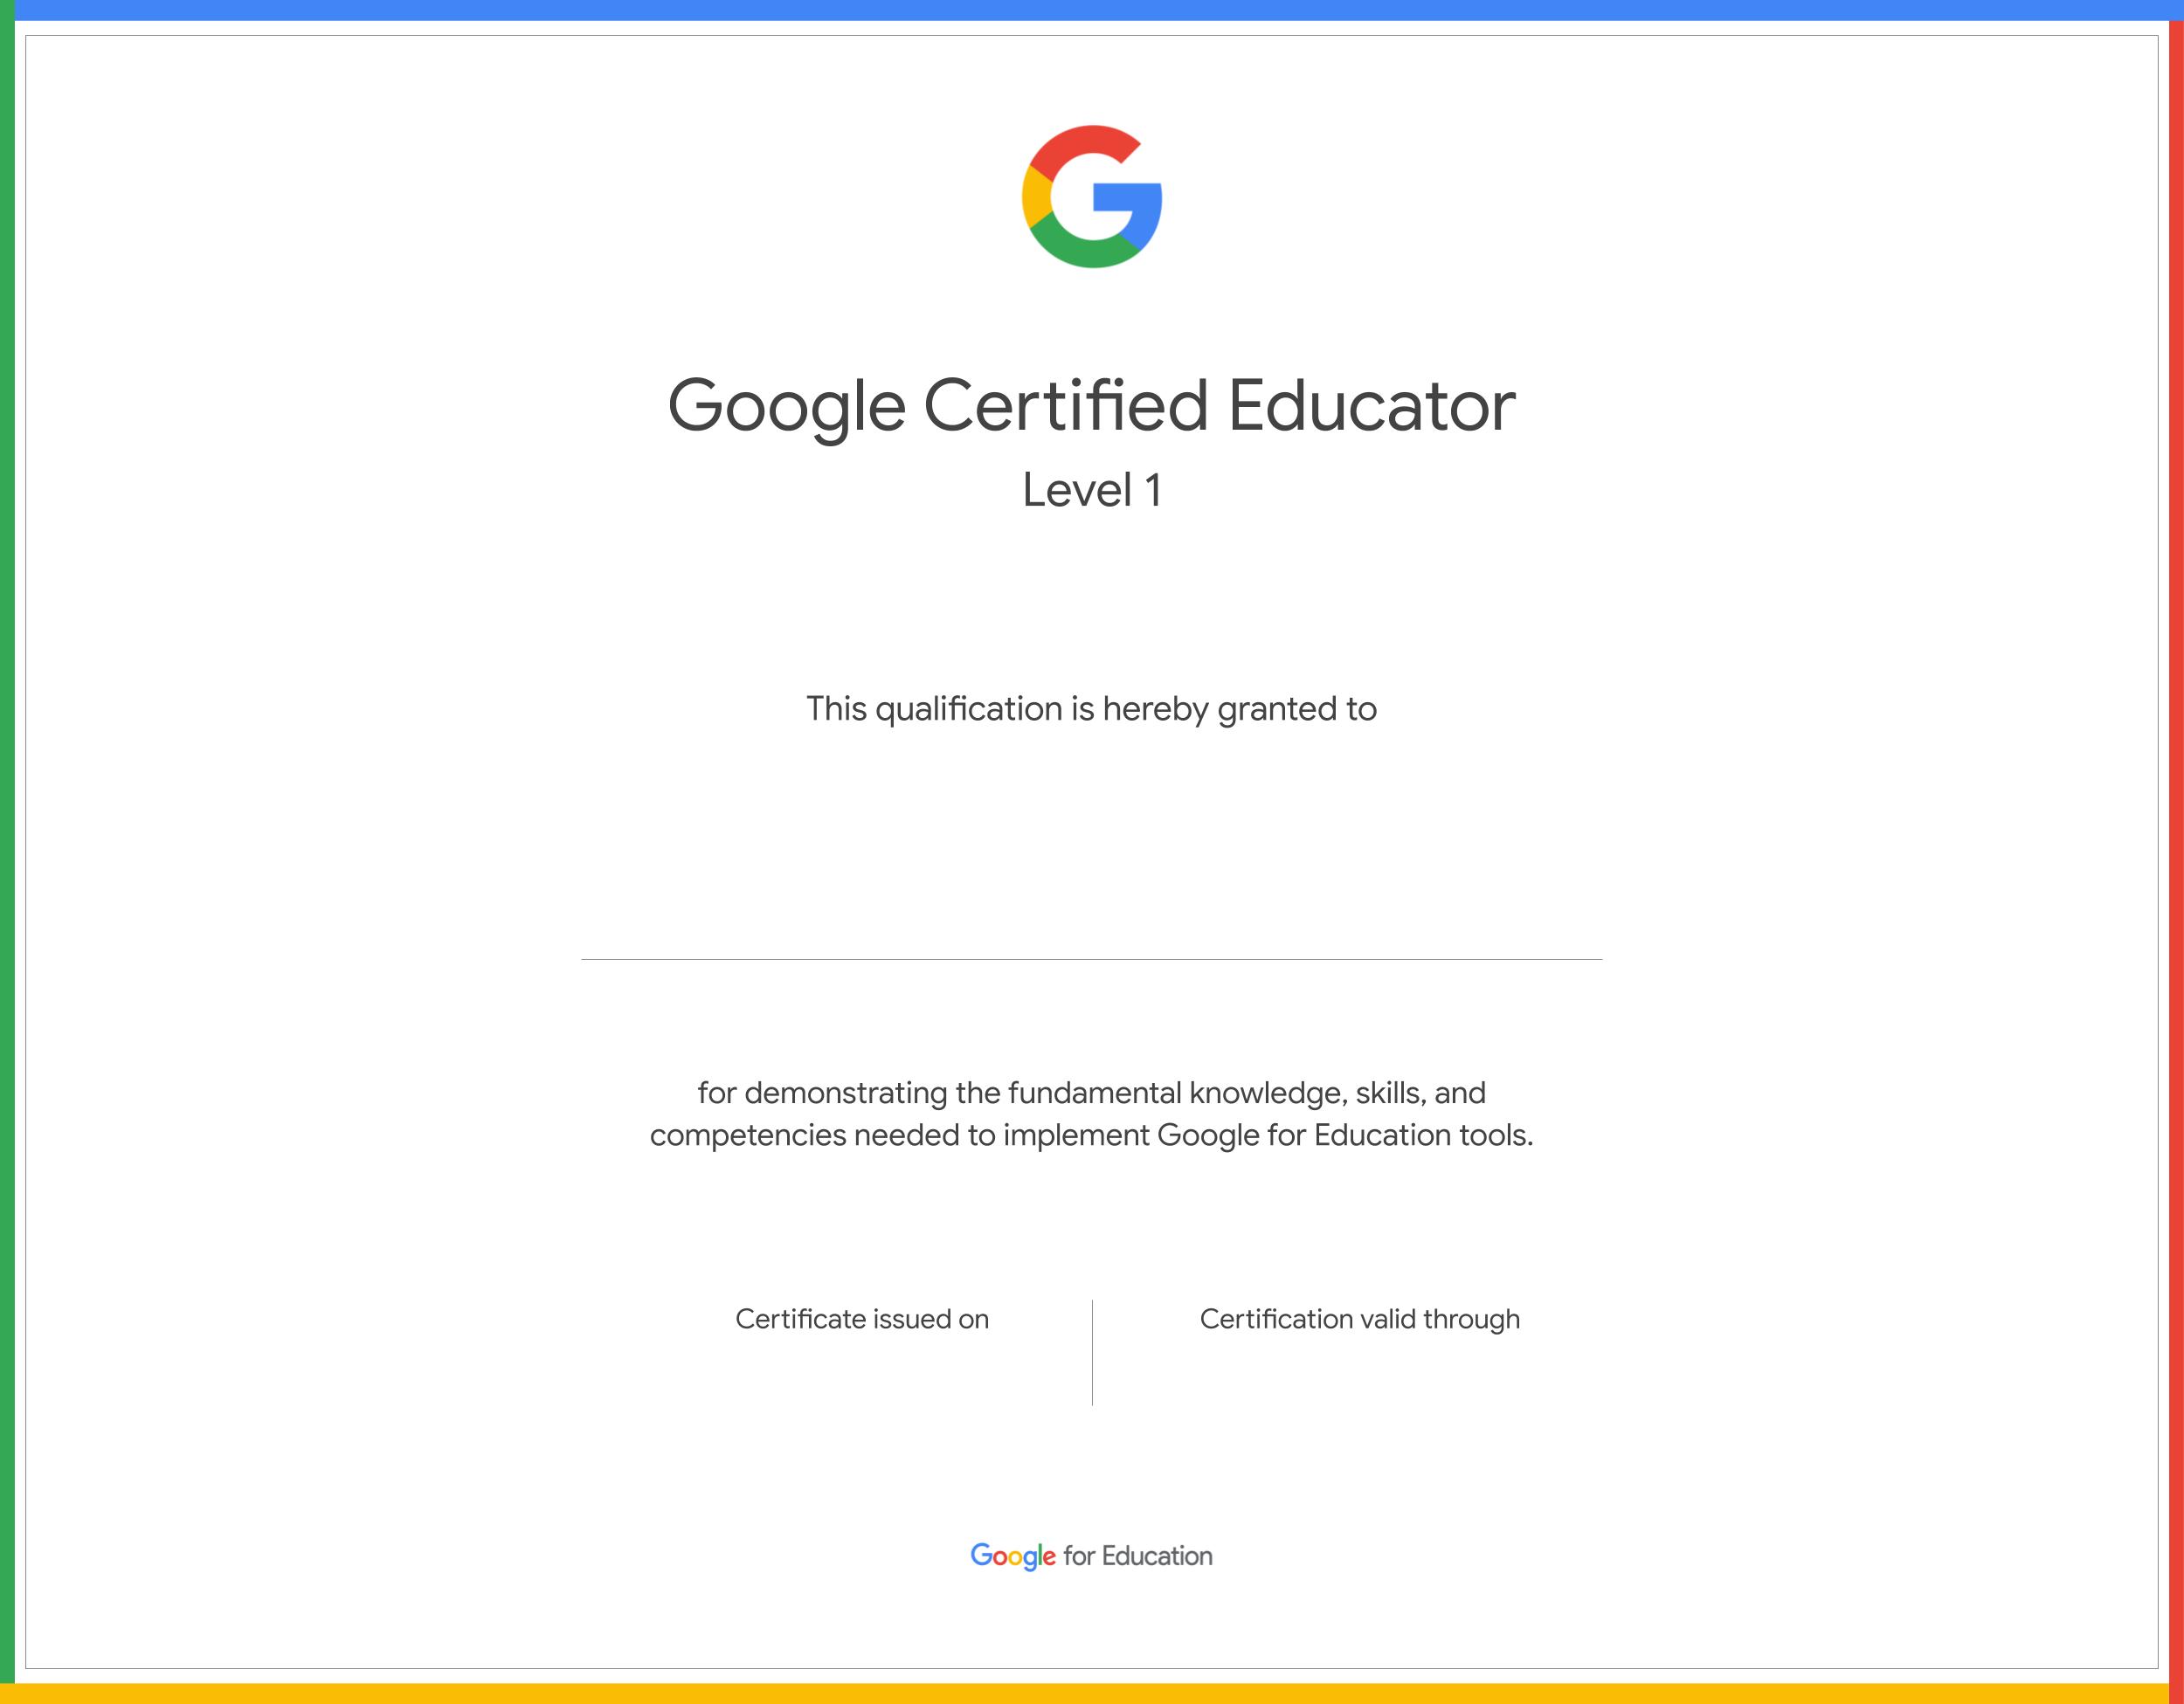  จะเป็นนักการศึกษาที่ผ่านการรับรองของ Google ได้อย่างไร